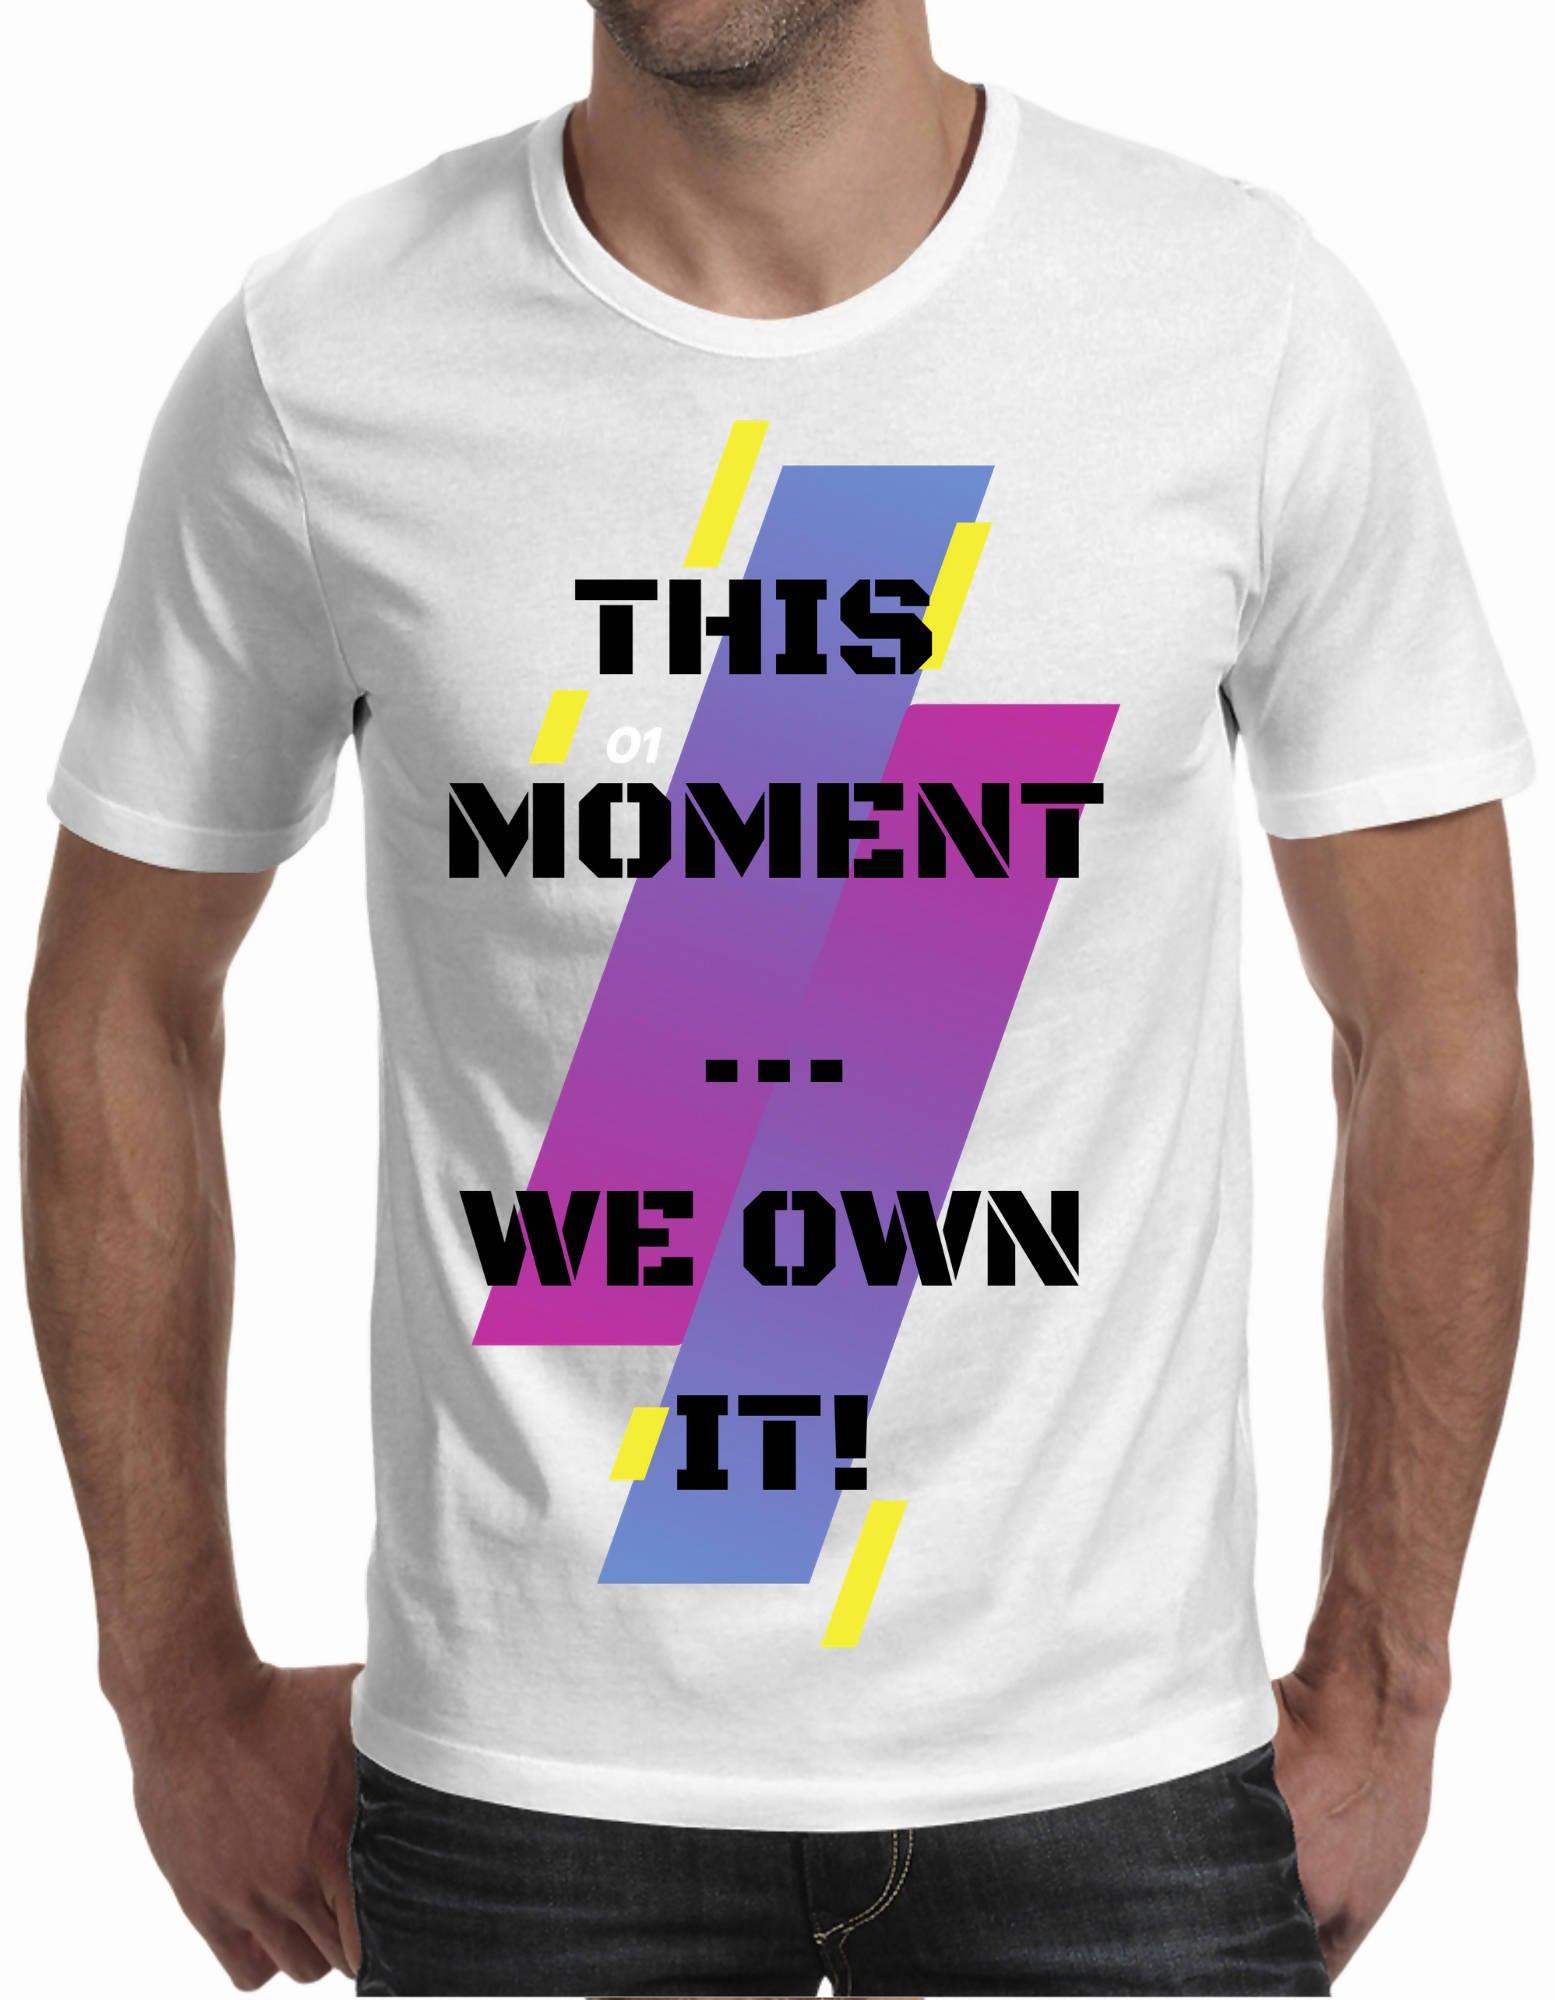 We own it Light Shirt - A3 Front Only - Men's T-Shirt (Huzki Apparel)